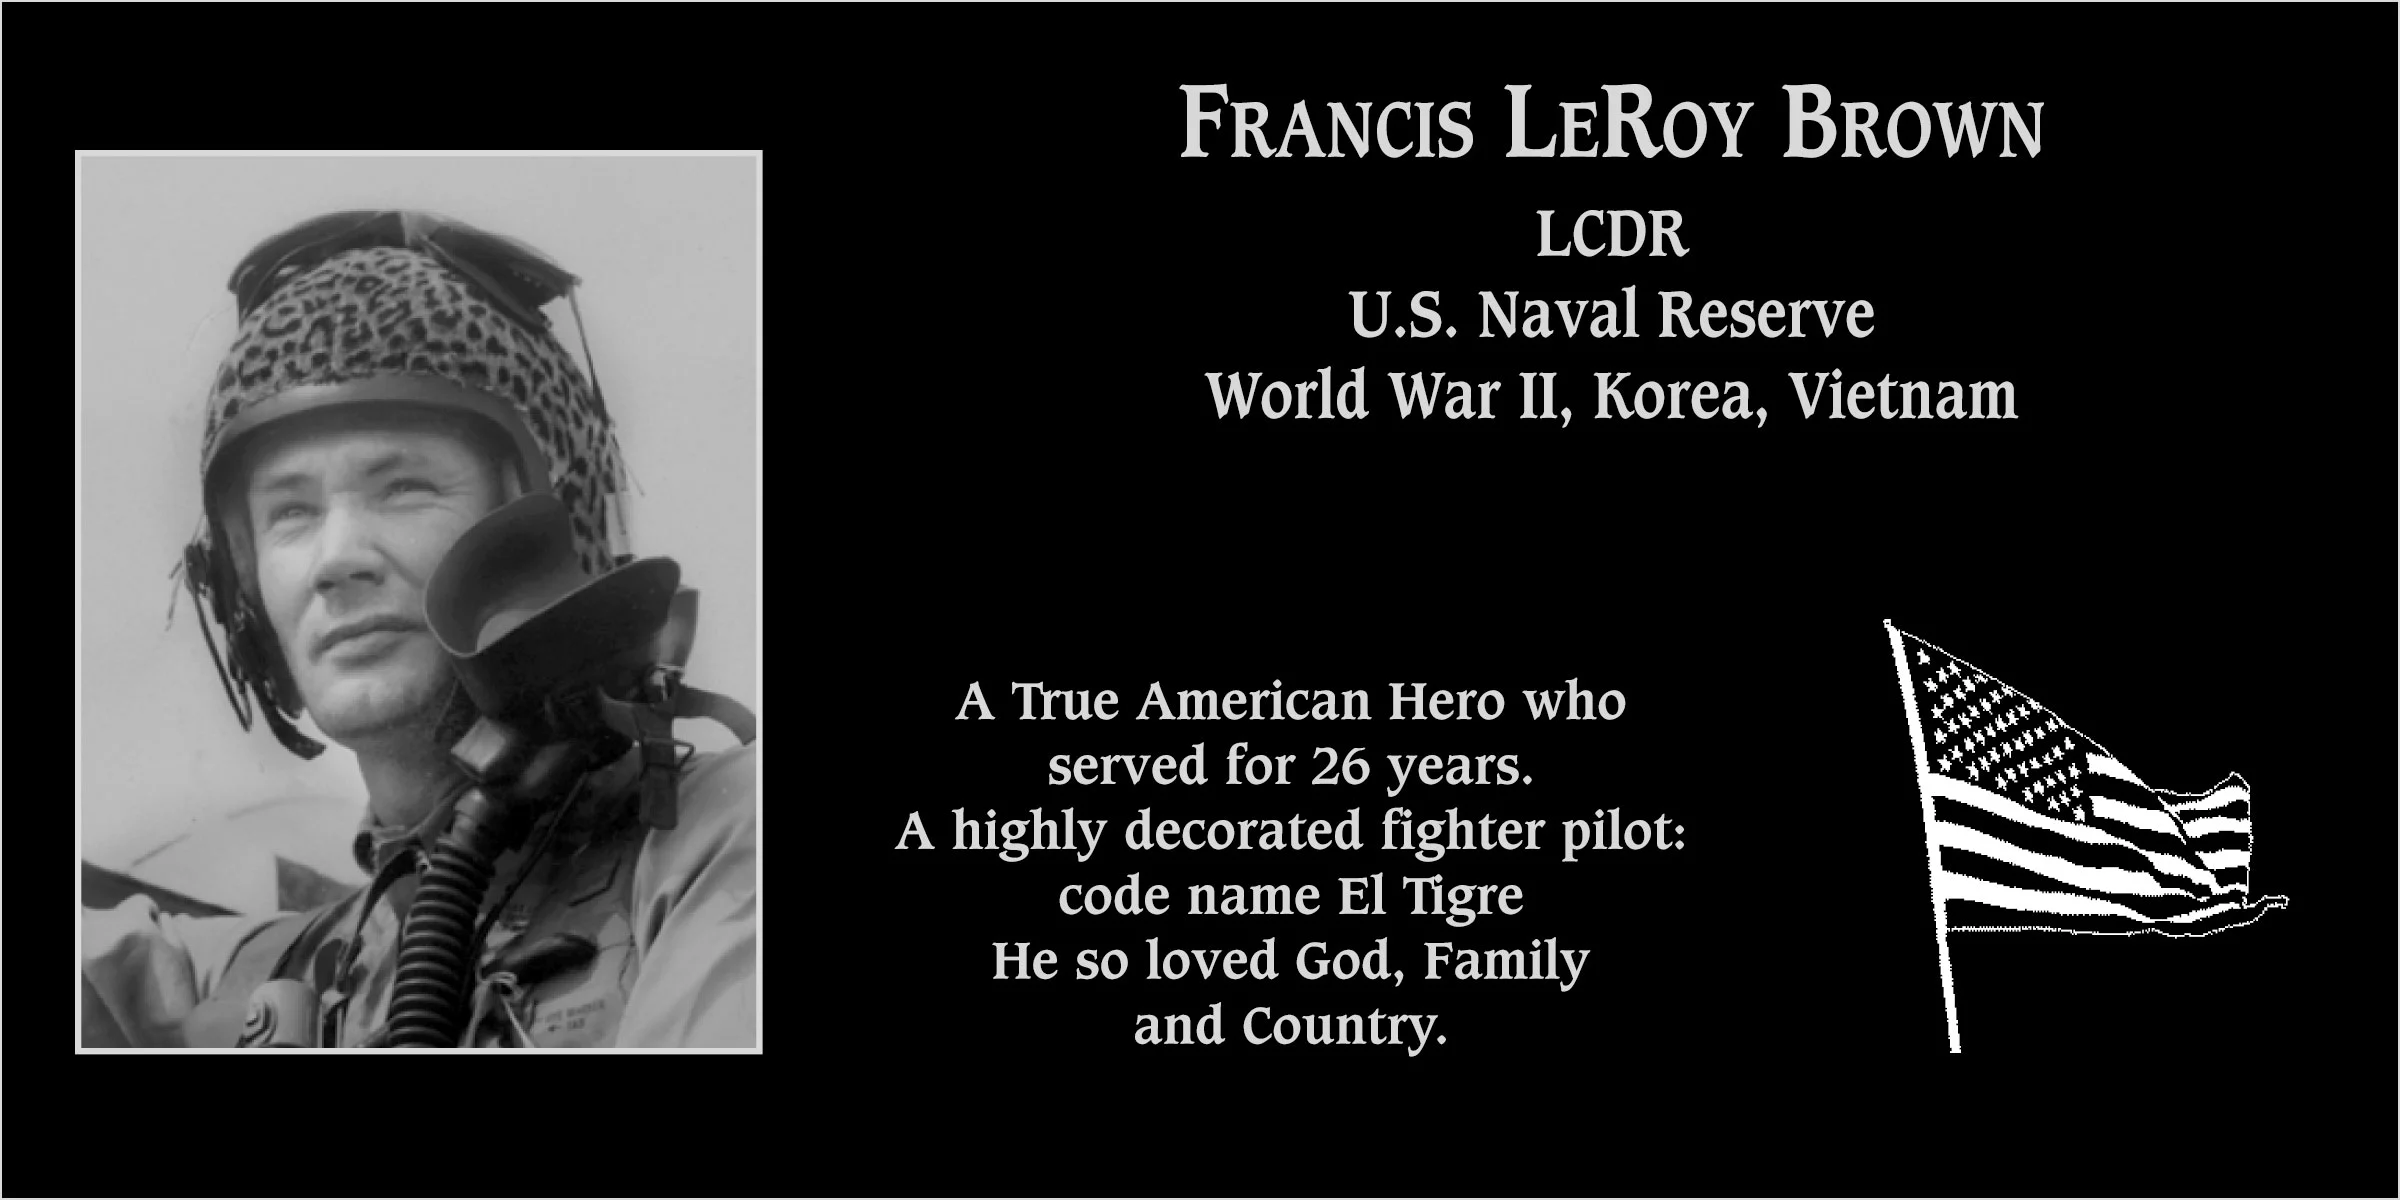 Francis LeRoy “El Tigre” Brown